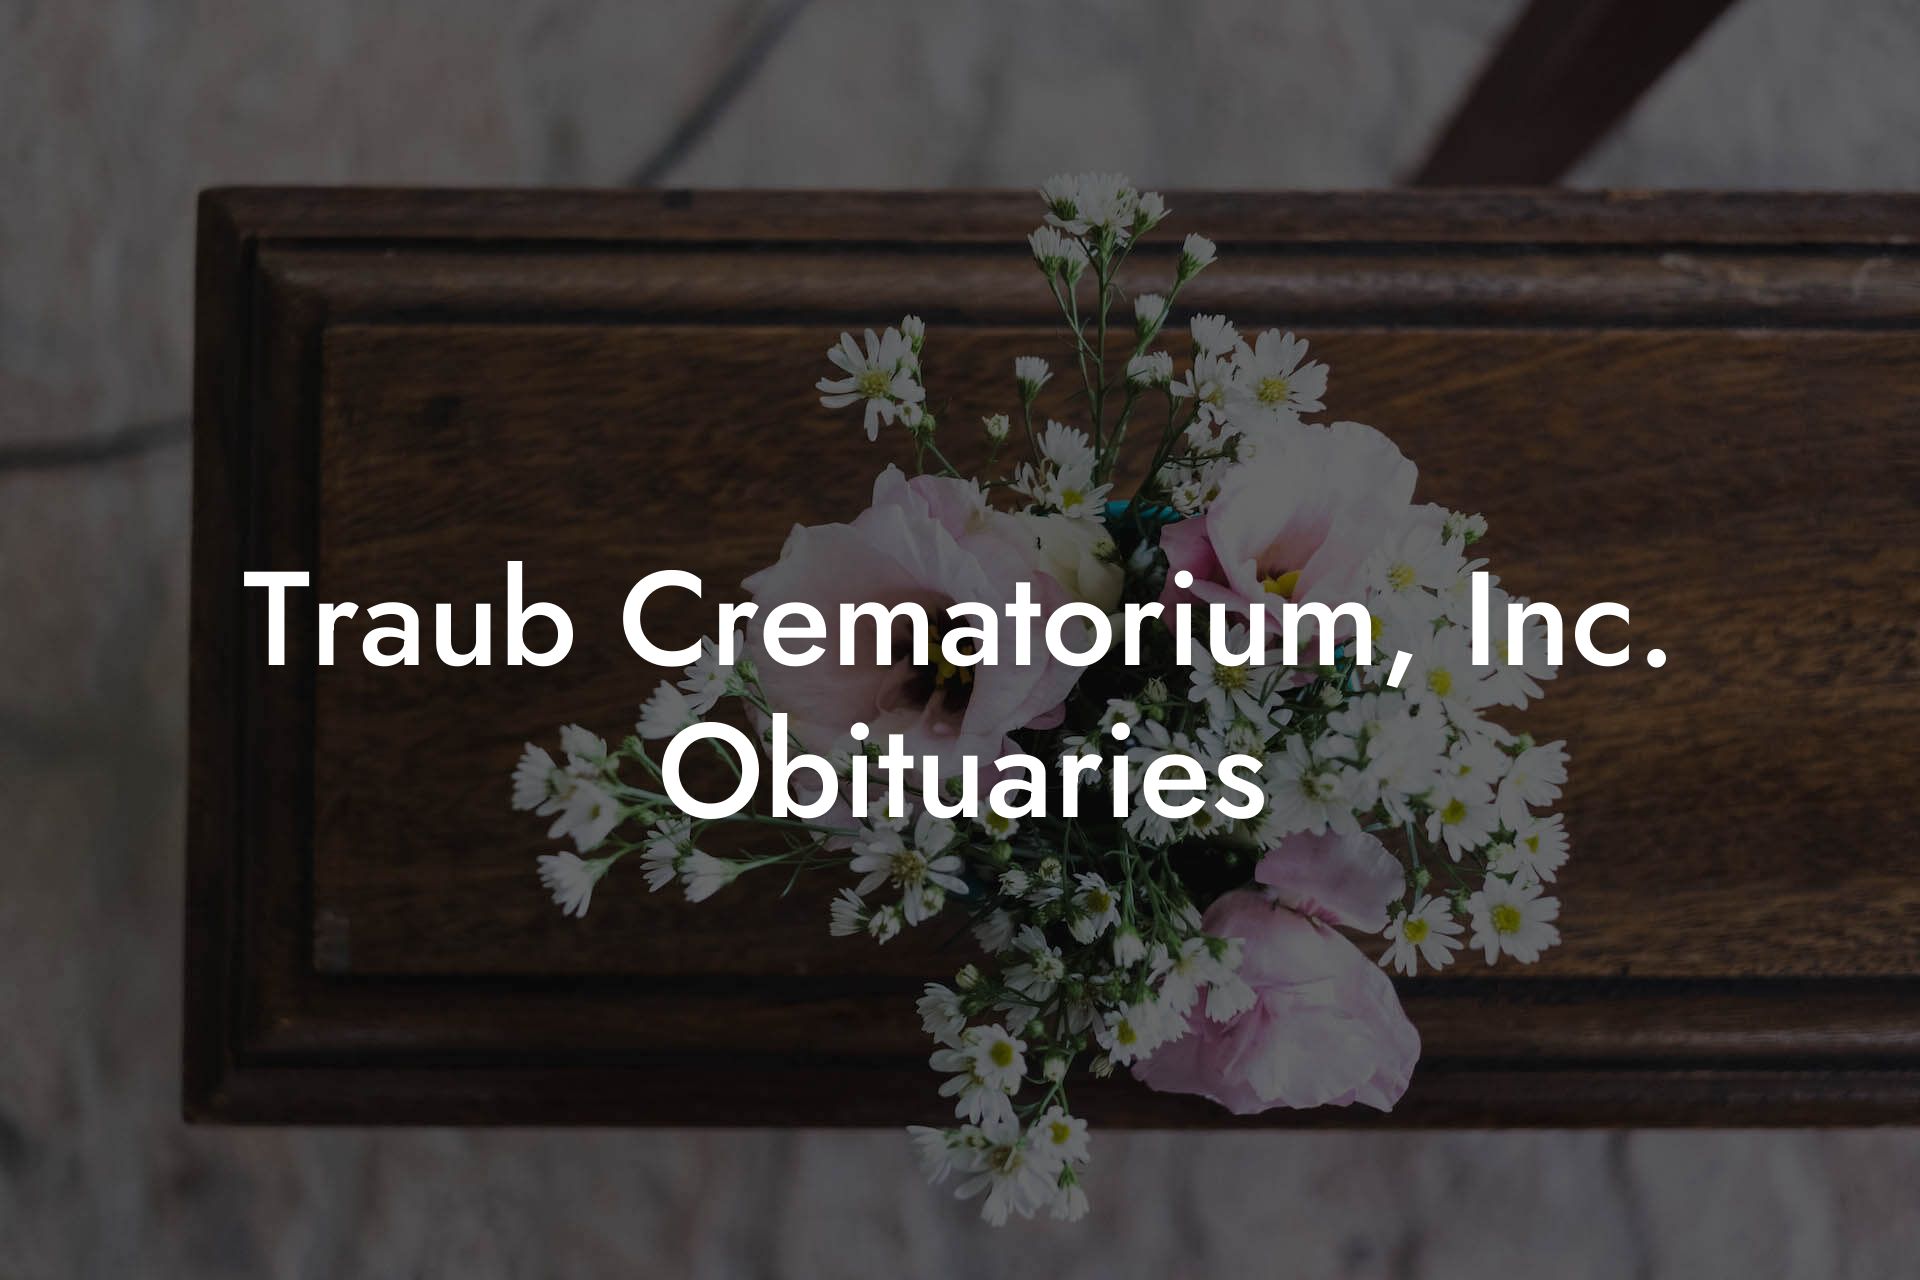 Traub Crematorium, Inc. Obituaries